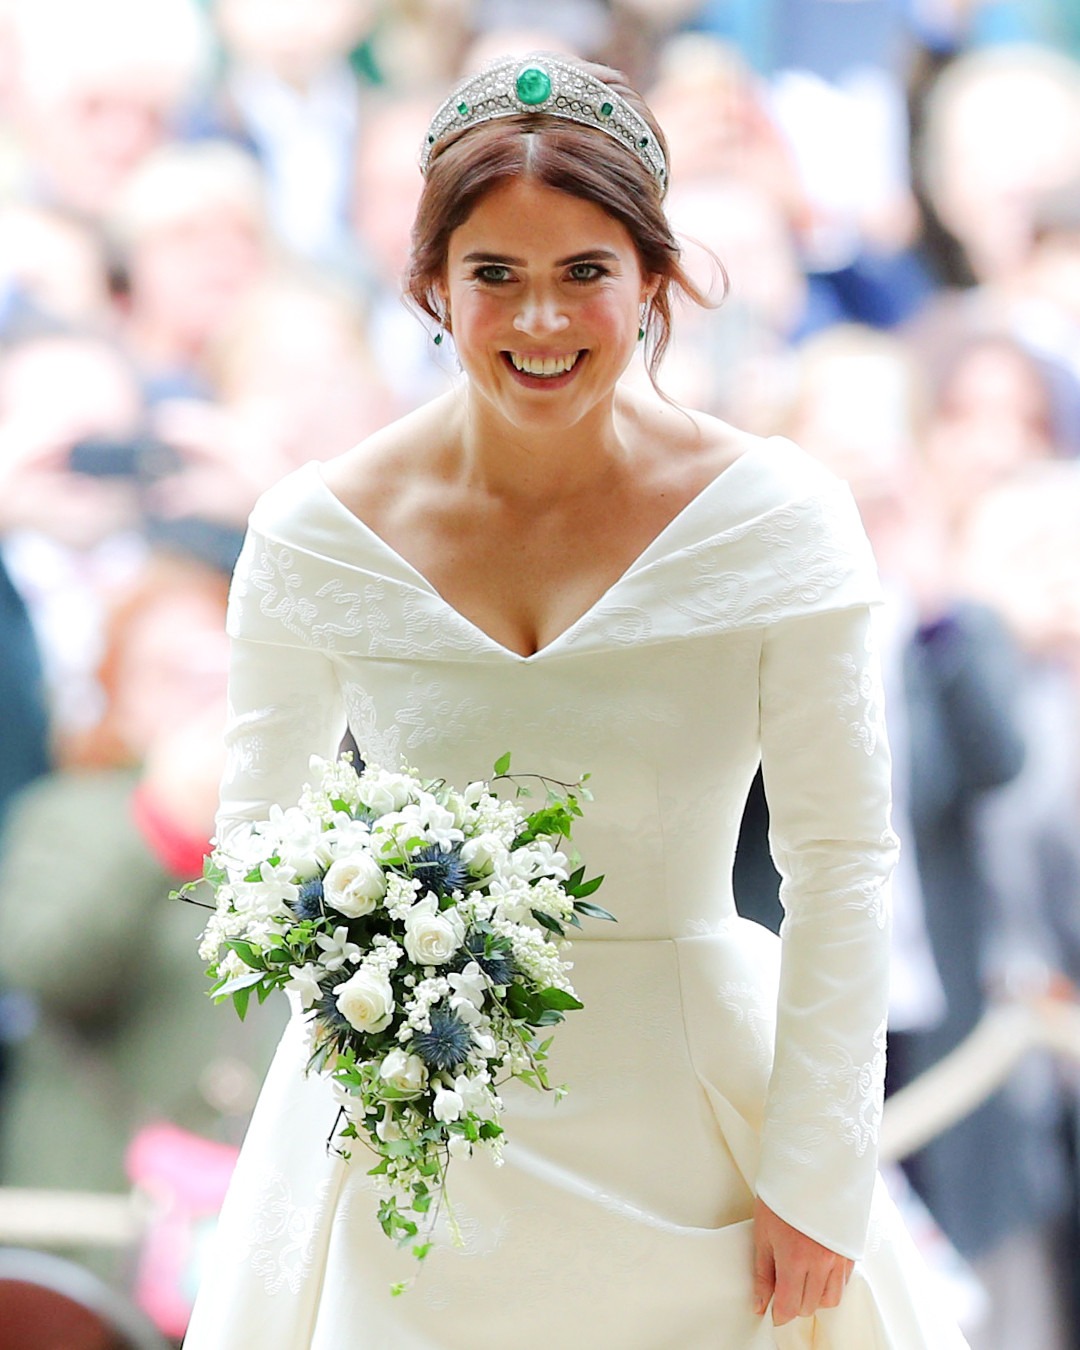 Princess Eugenie's Royal Wedding Bouquet: All the Details | E! News